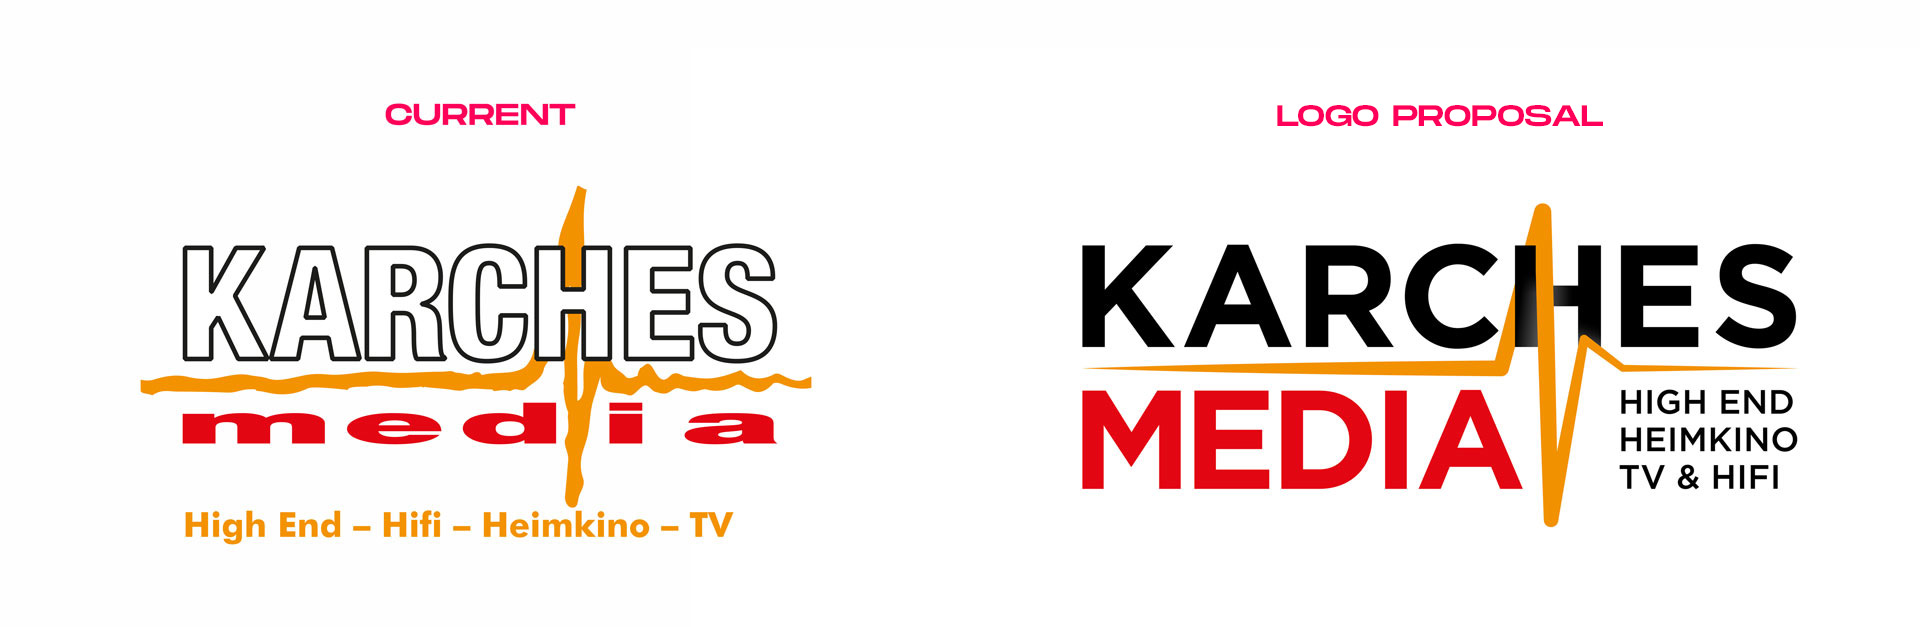 Karches_Media_Logo_comparison_02